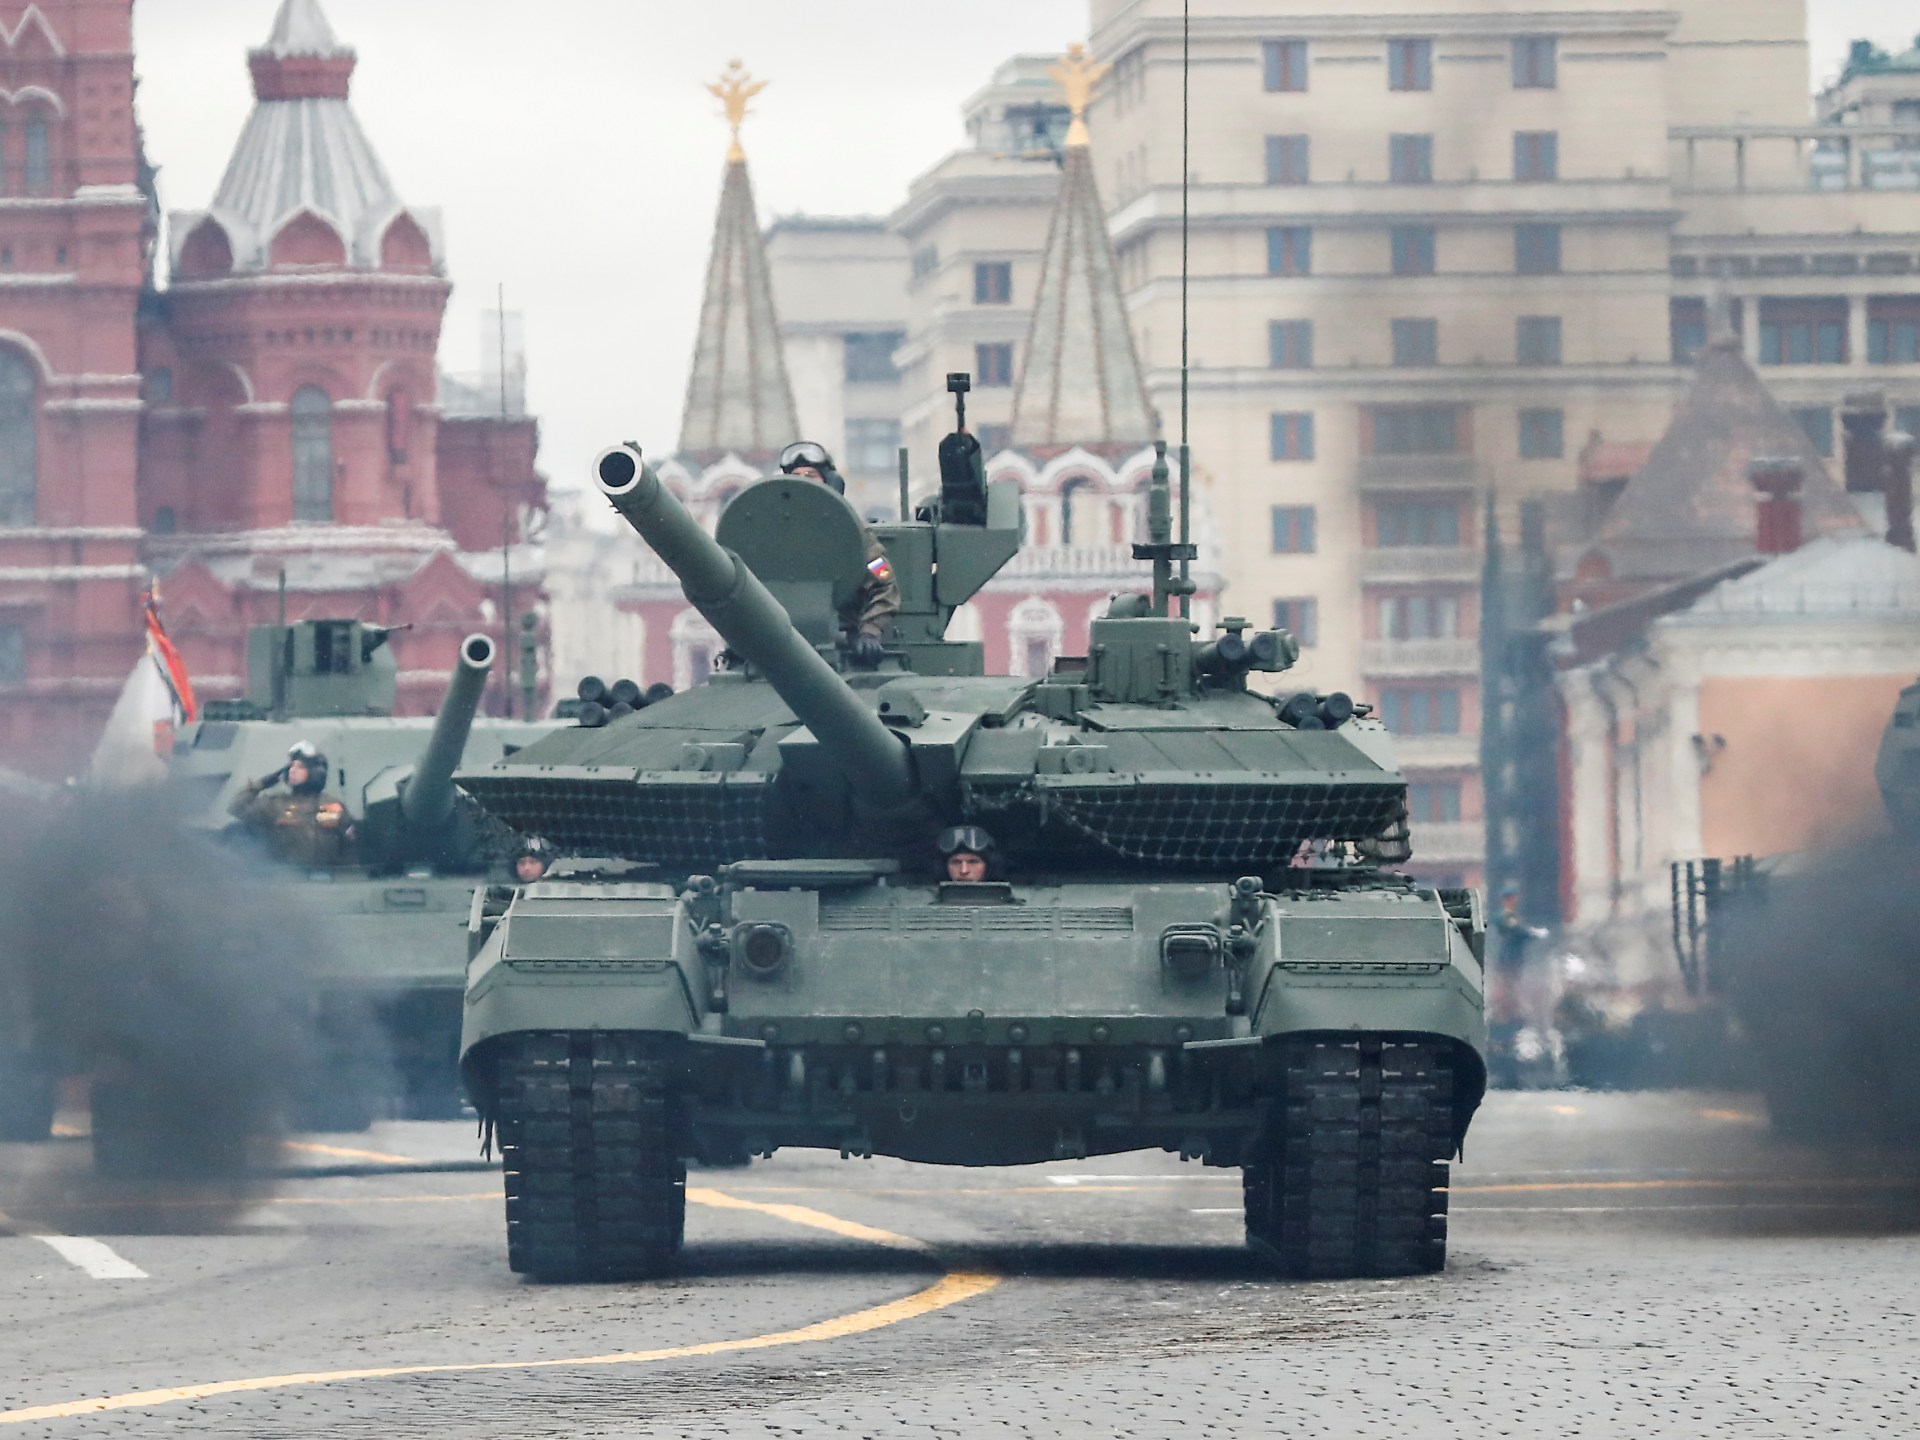 الجيش الروسي يتسلم مئات الدبابات الحديثة وزيلينسكي يقول إن سقوط باخموت ستكون له "عواقب وخيمة"